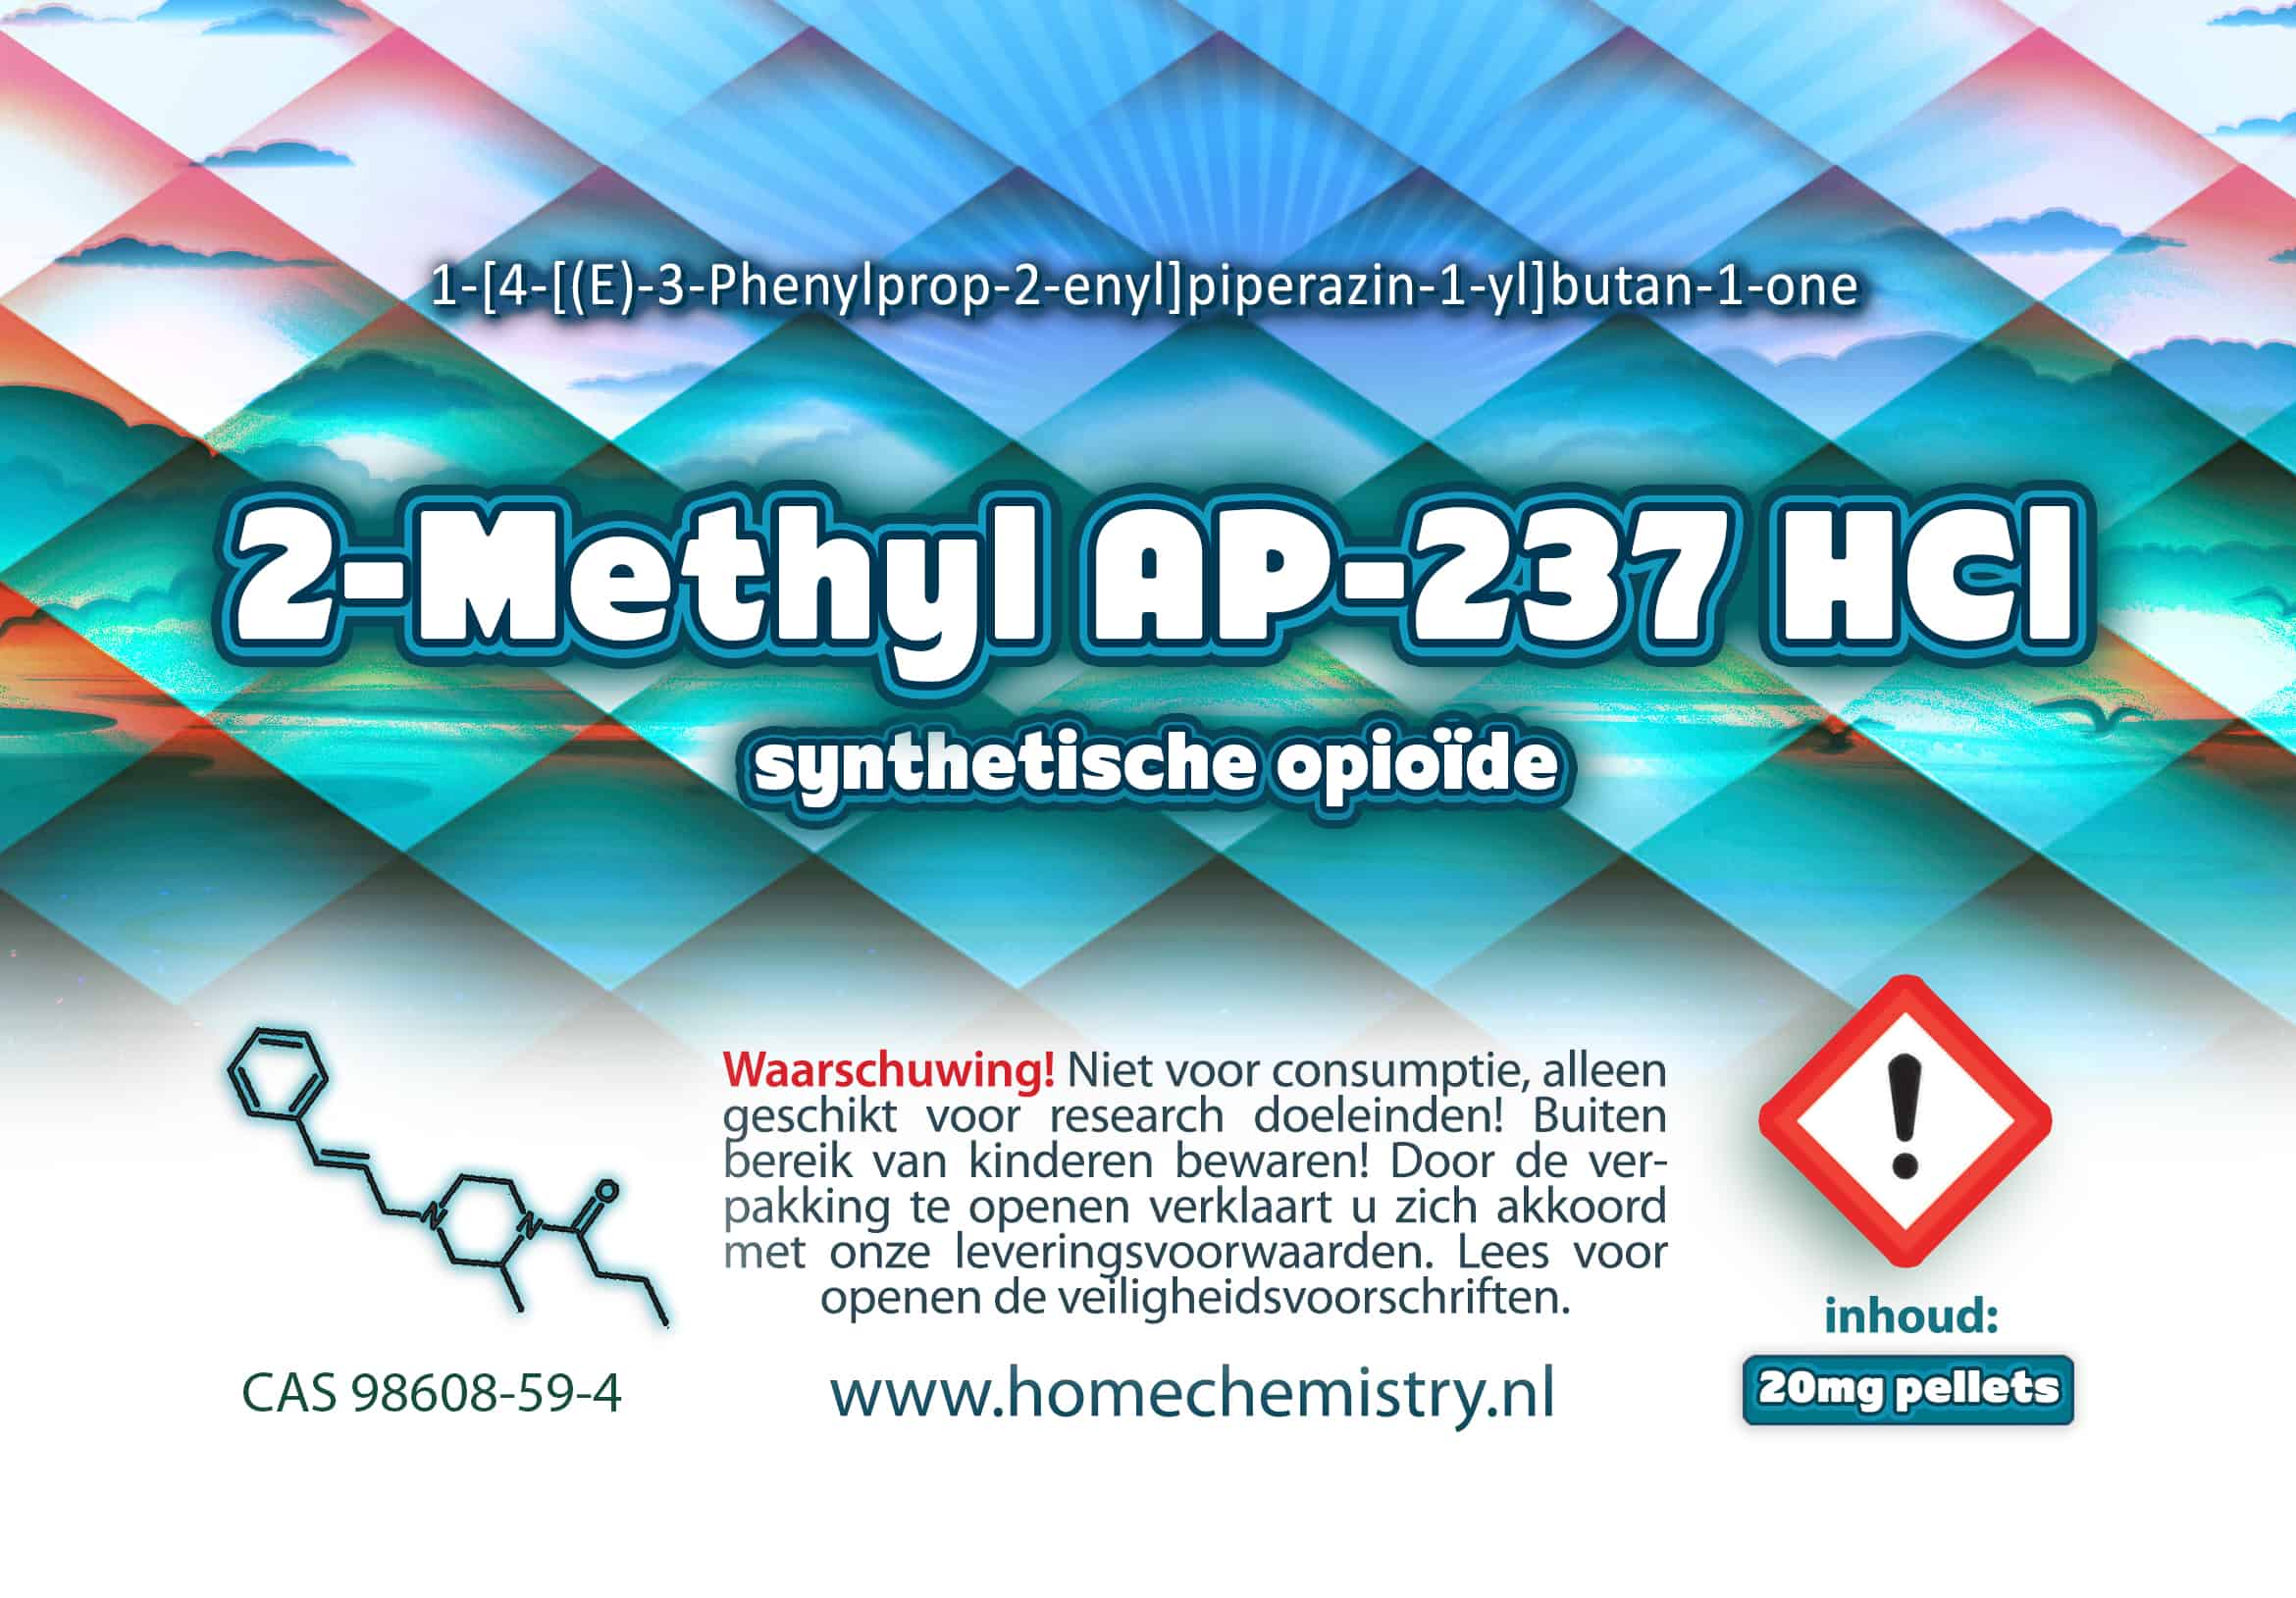 2-methyl-AP-237-hcl kopen - 10x20mg pellets